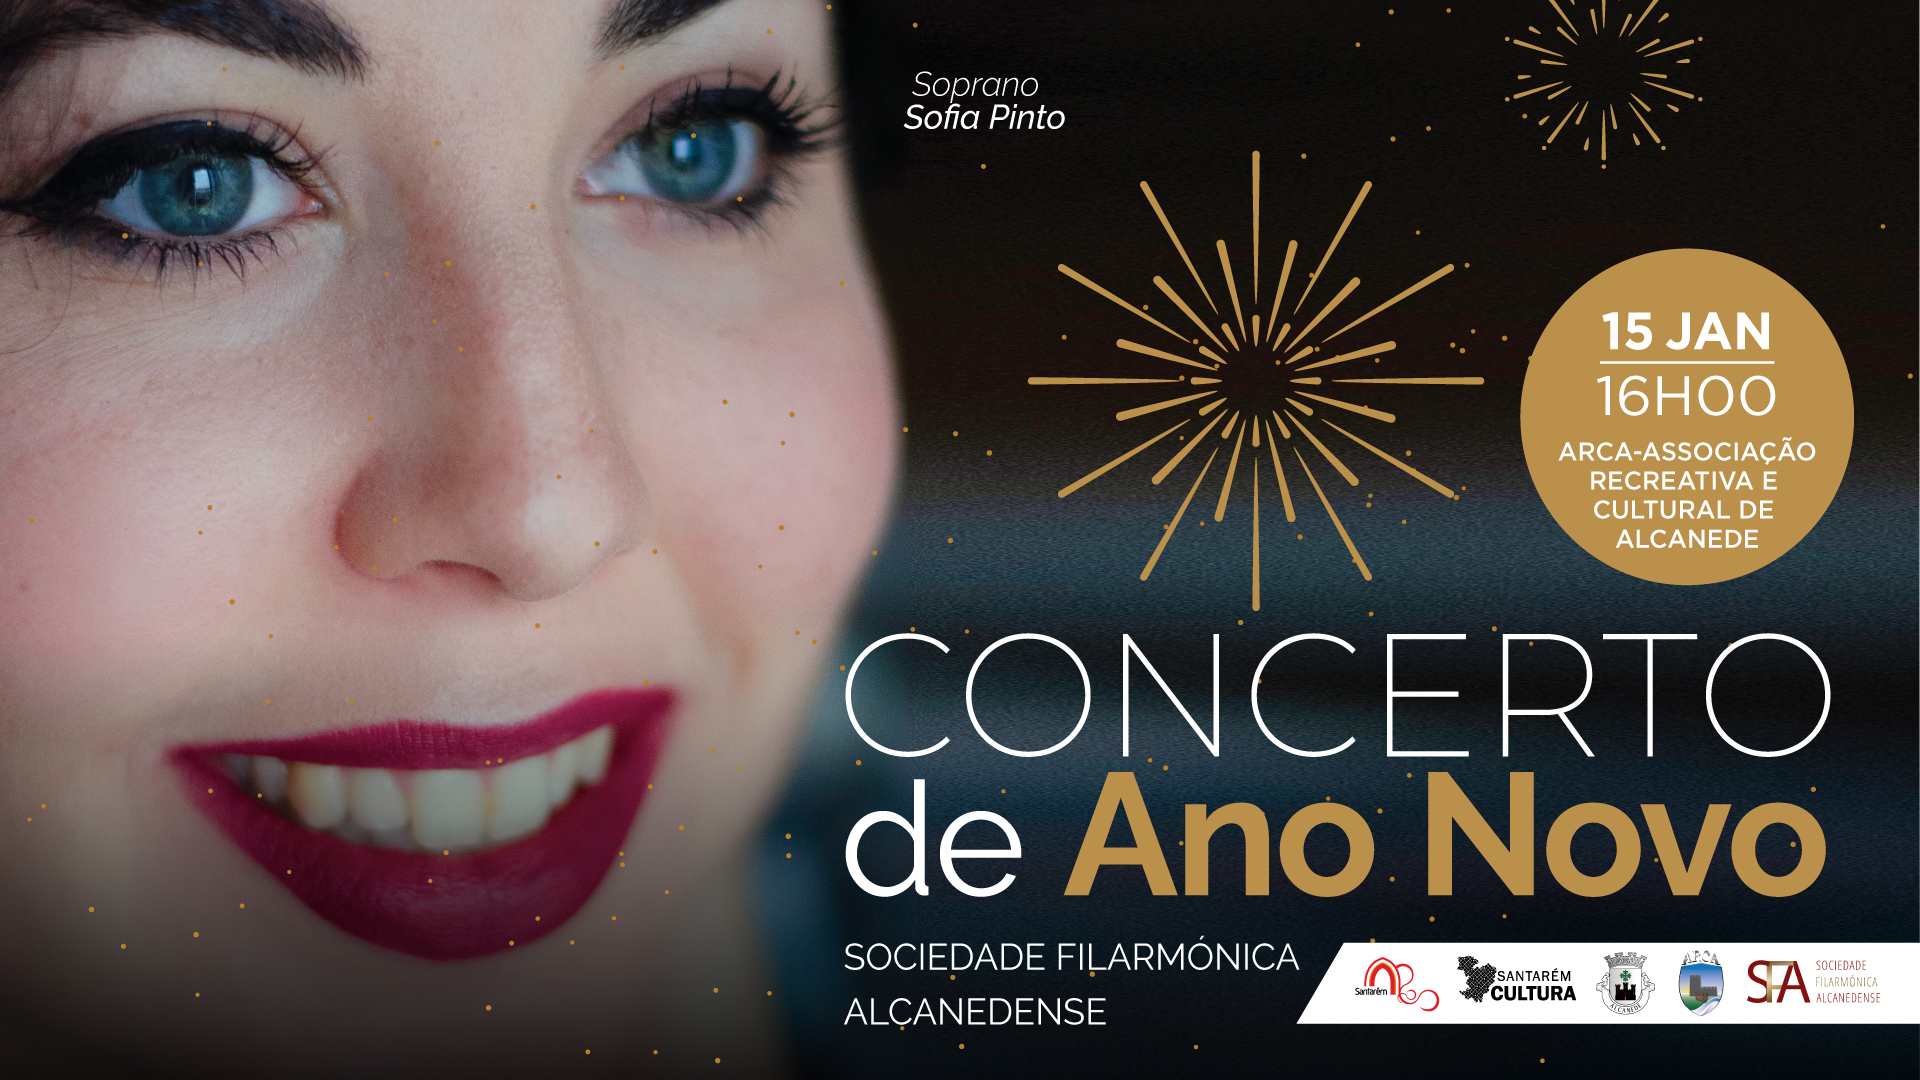 Concerto de Ano Novo | Soprano Sofia Pinto Sociedade Filarmónica Alcanedense